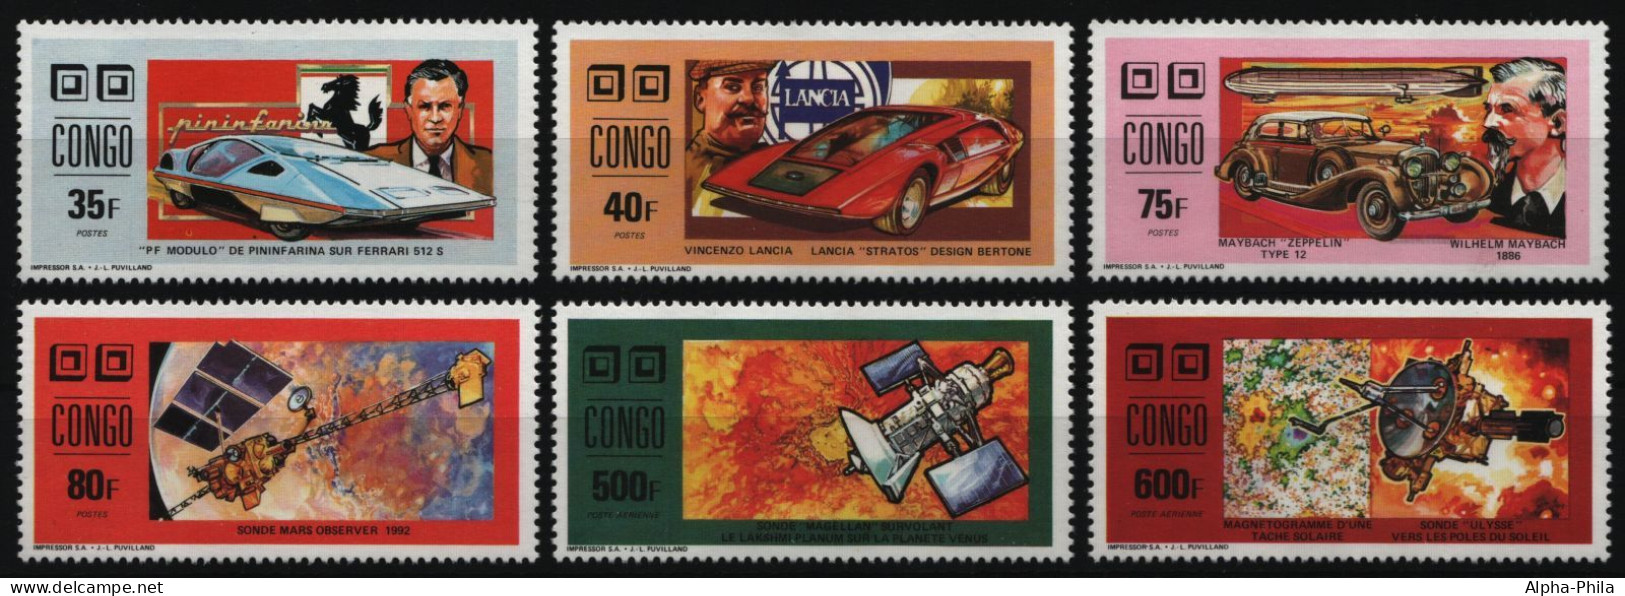 Kongo-Brazzaville 1991 - Mi-Nr. 1274-1279 A ** - MNH - Autos - Weltraum - Nuovi